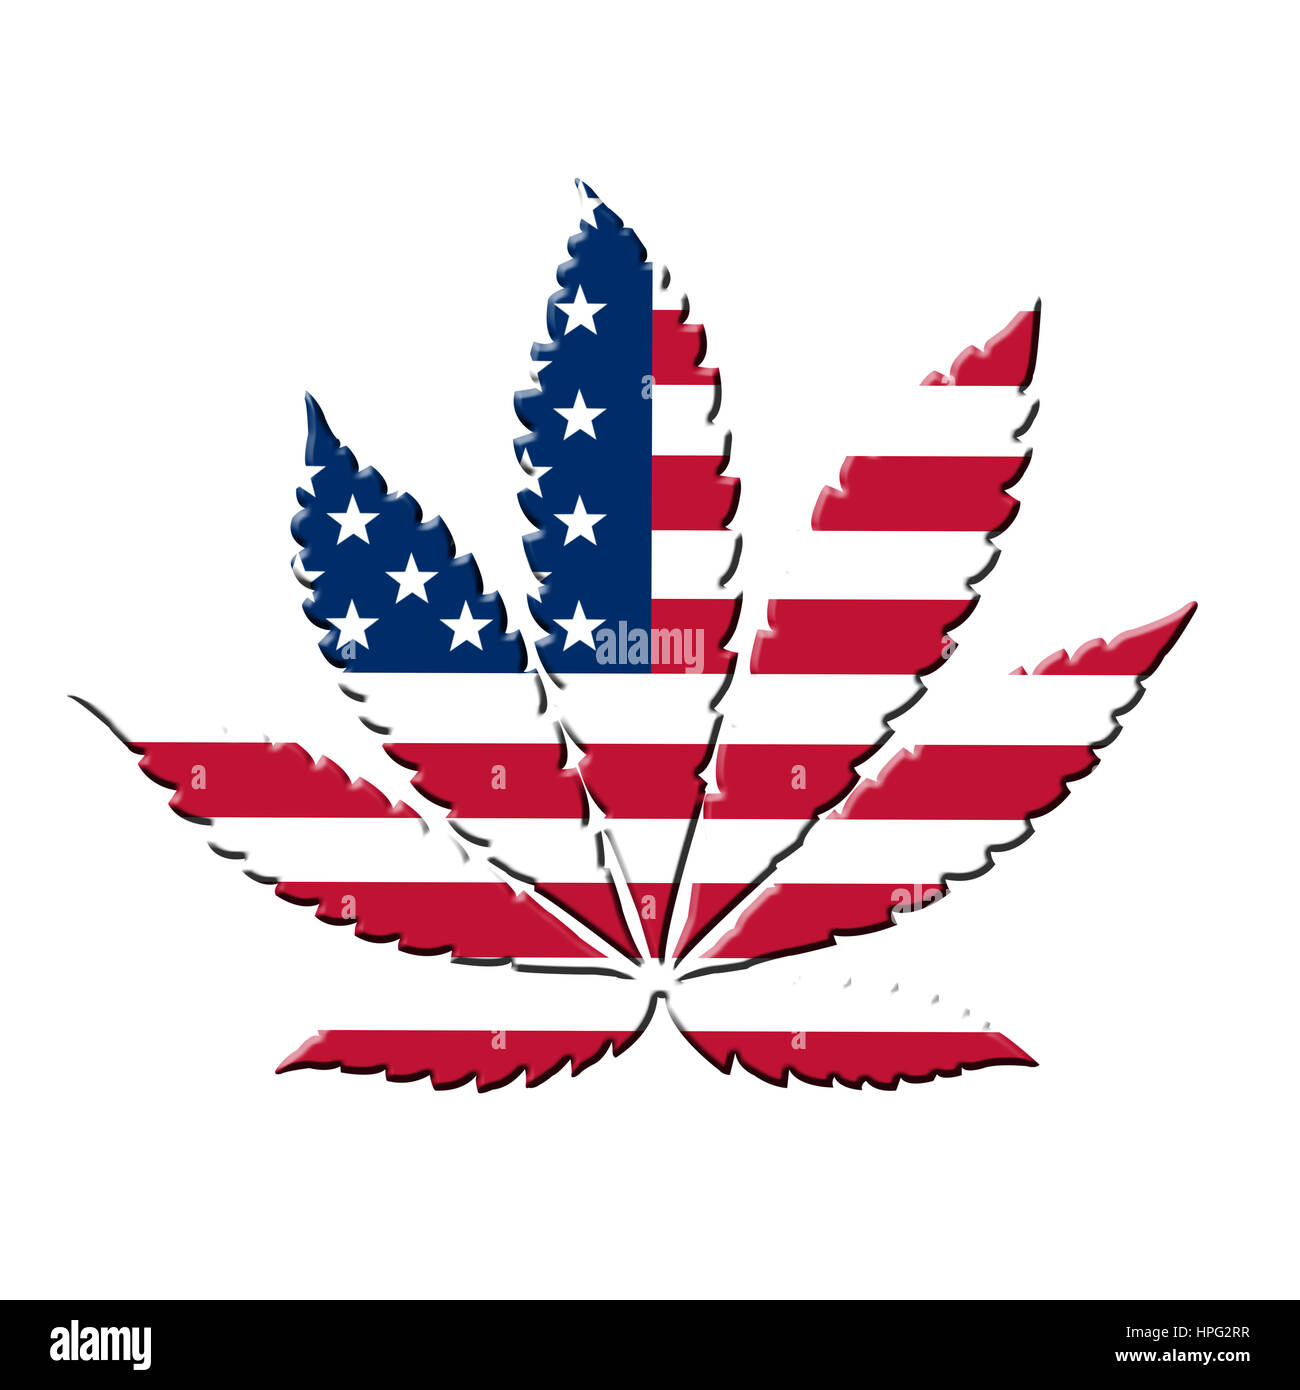 Stati Uniti bandiera con foglie di marijuana invece di stelle Foto Stock